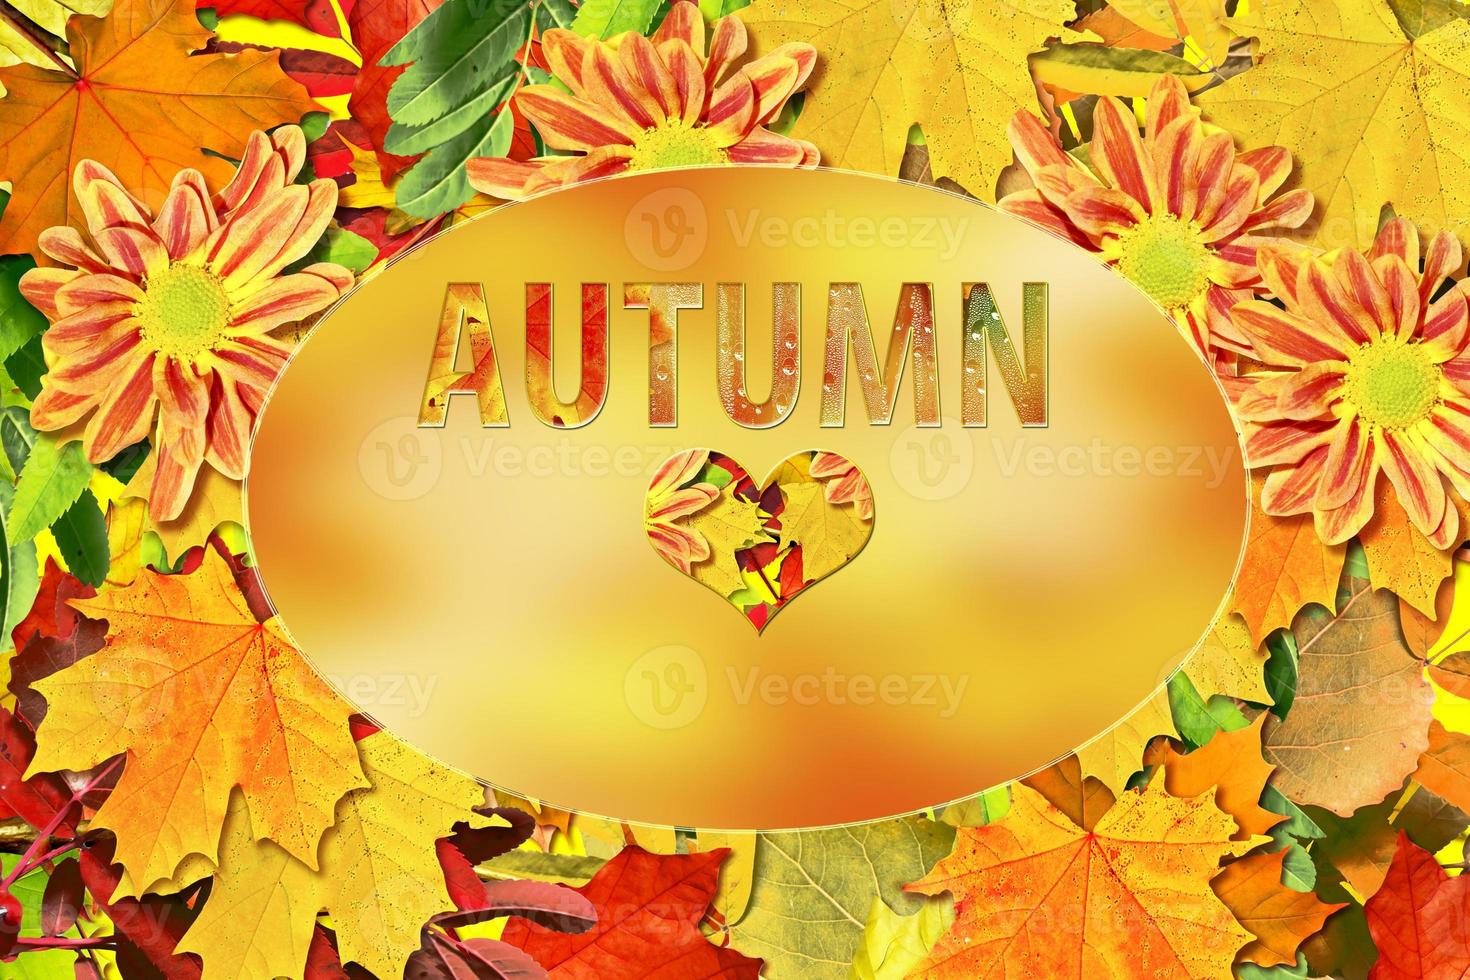 sfondo astratto di foglie d'autunno foto